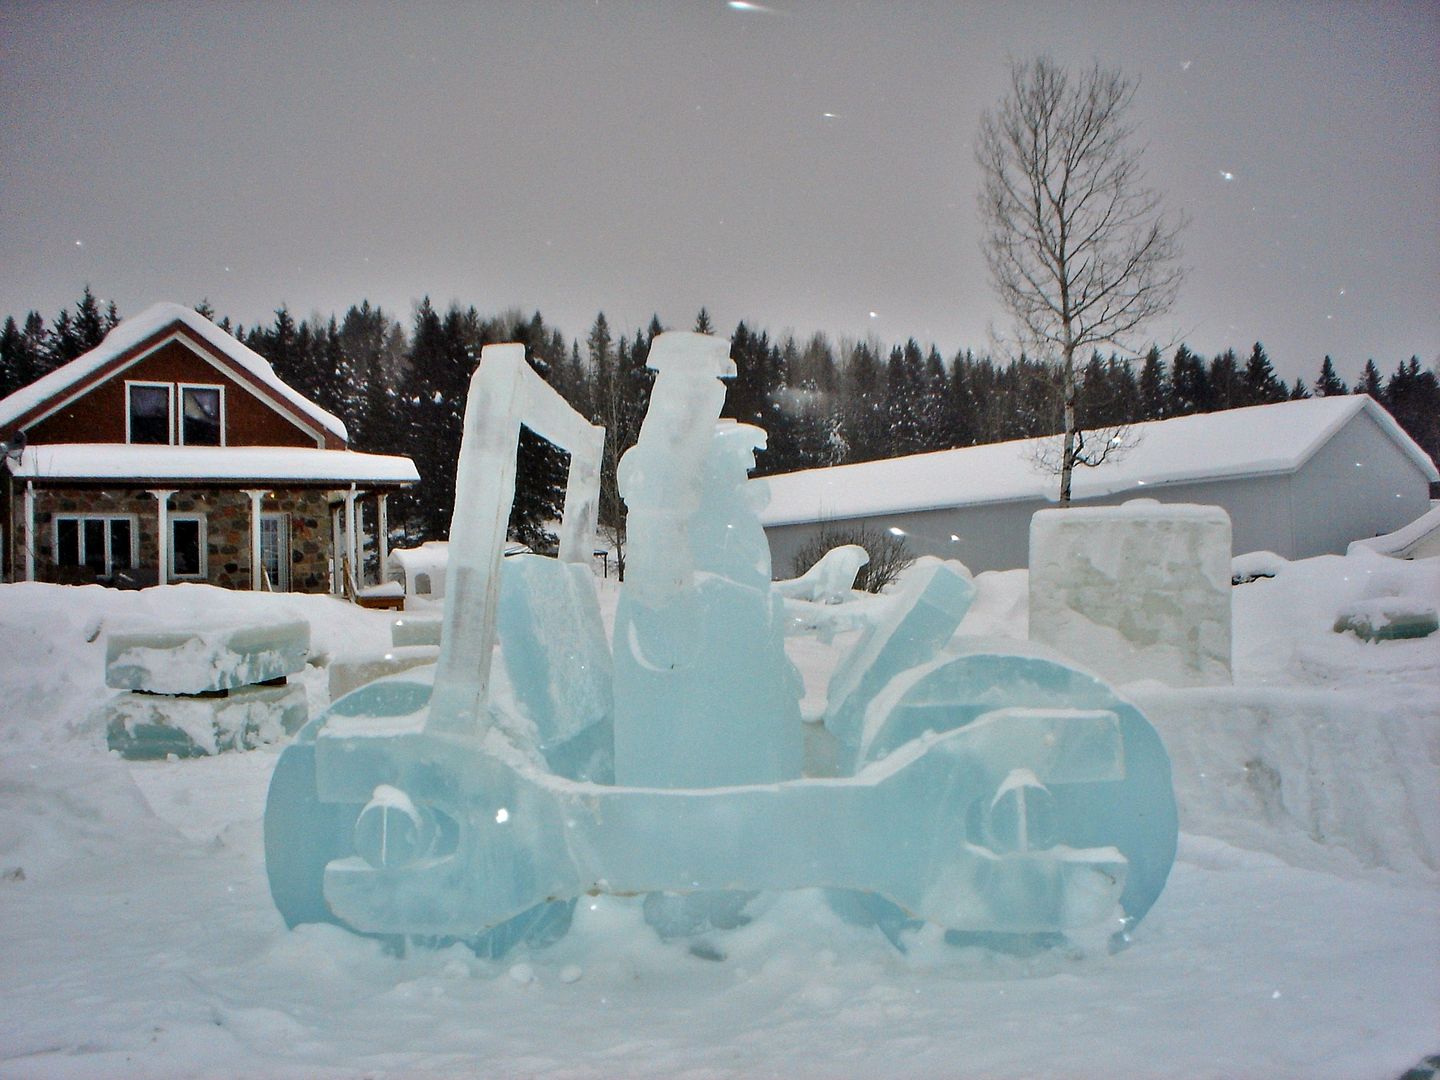 Joliette/St-Côme/St-Zénon festival sculpture de glace Photo ride-report 2février2019 DSC00344_zpsm7vxhgj6